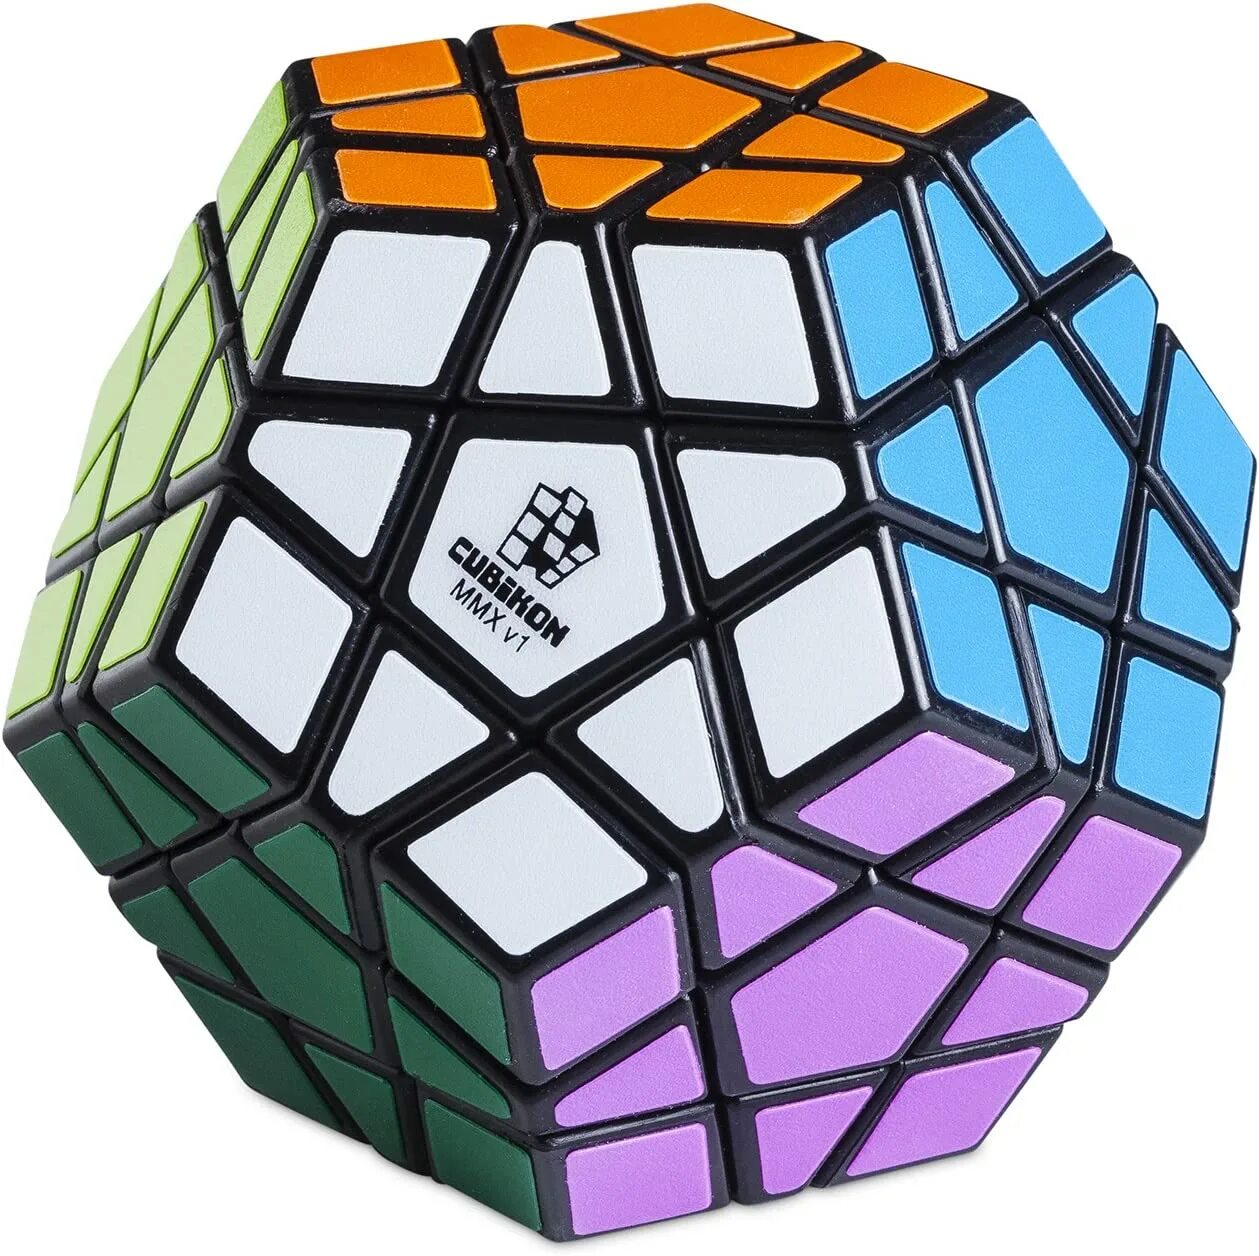 Cube 12. Мегаминкс Fanxin. Кубик Рубика октаэдр. Мегаминкс 4х4. Четырёхмерный кубик Рубика.